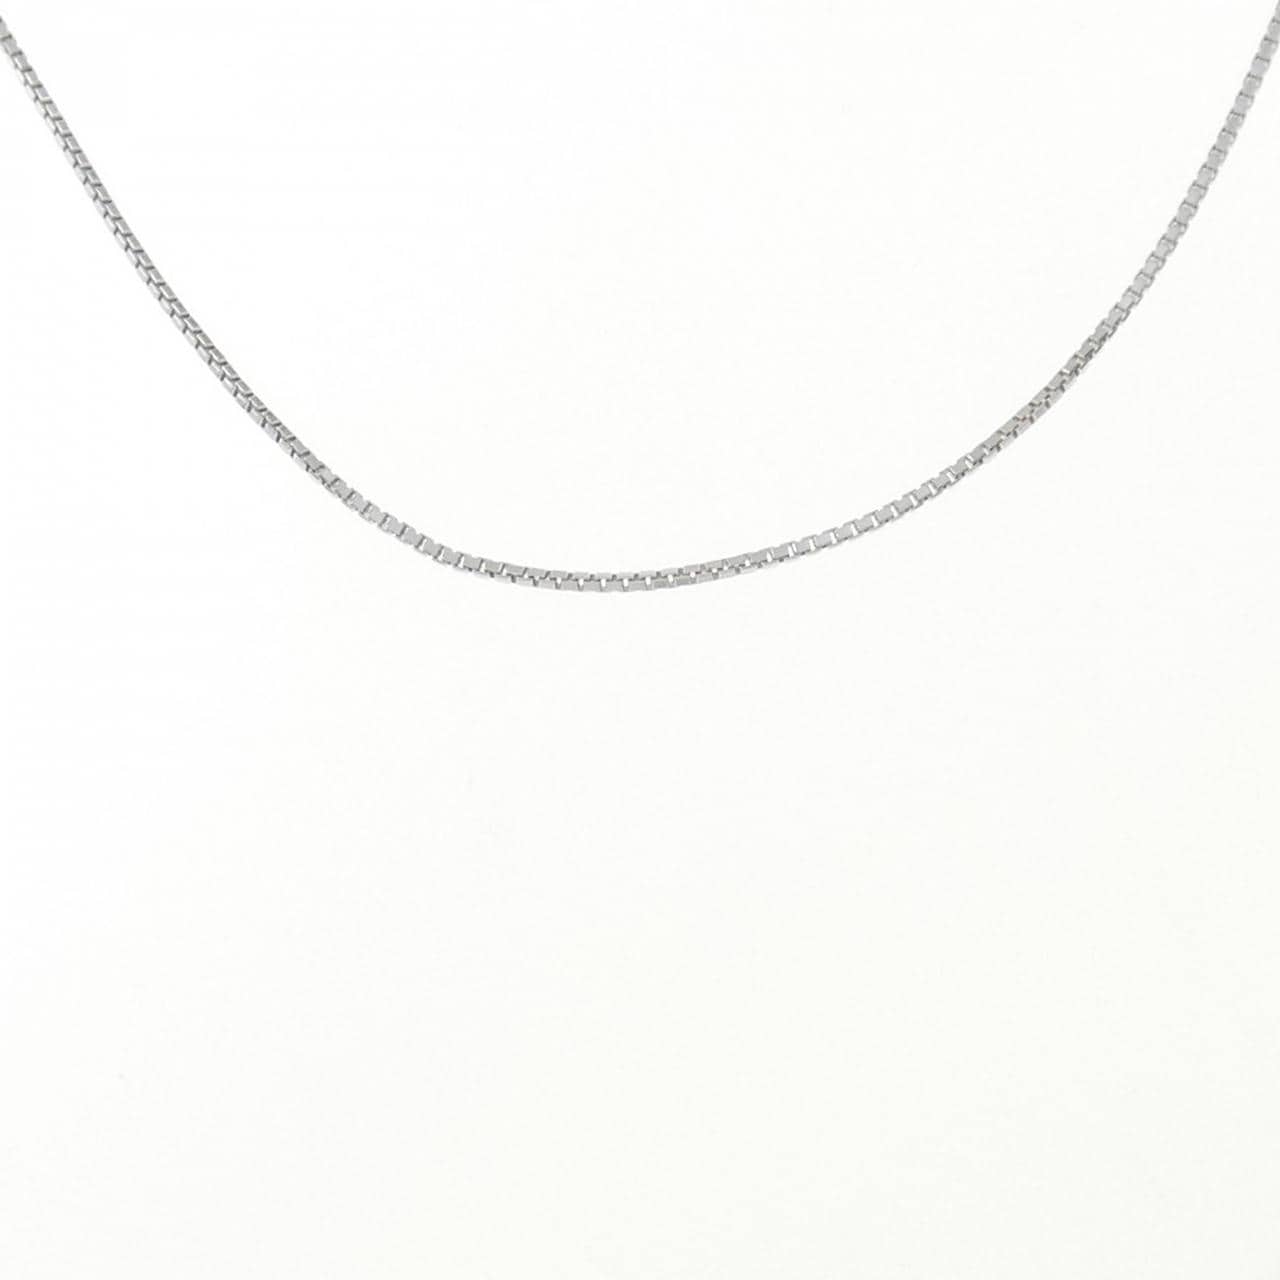 K18WG Venetian Chain Necklace